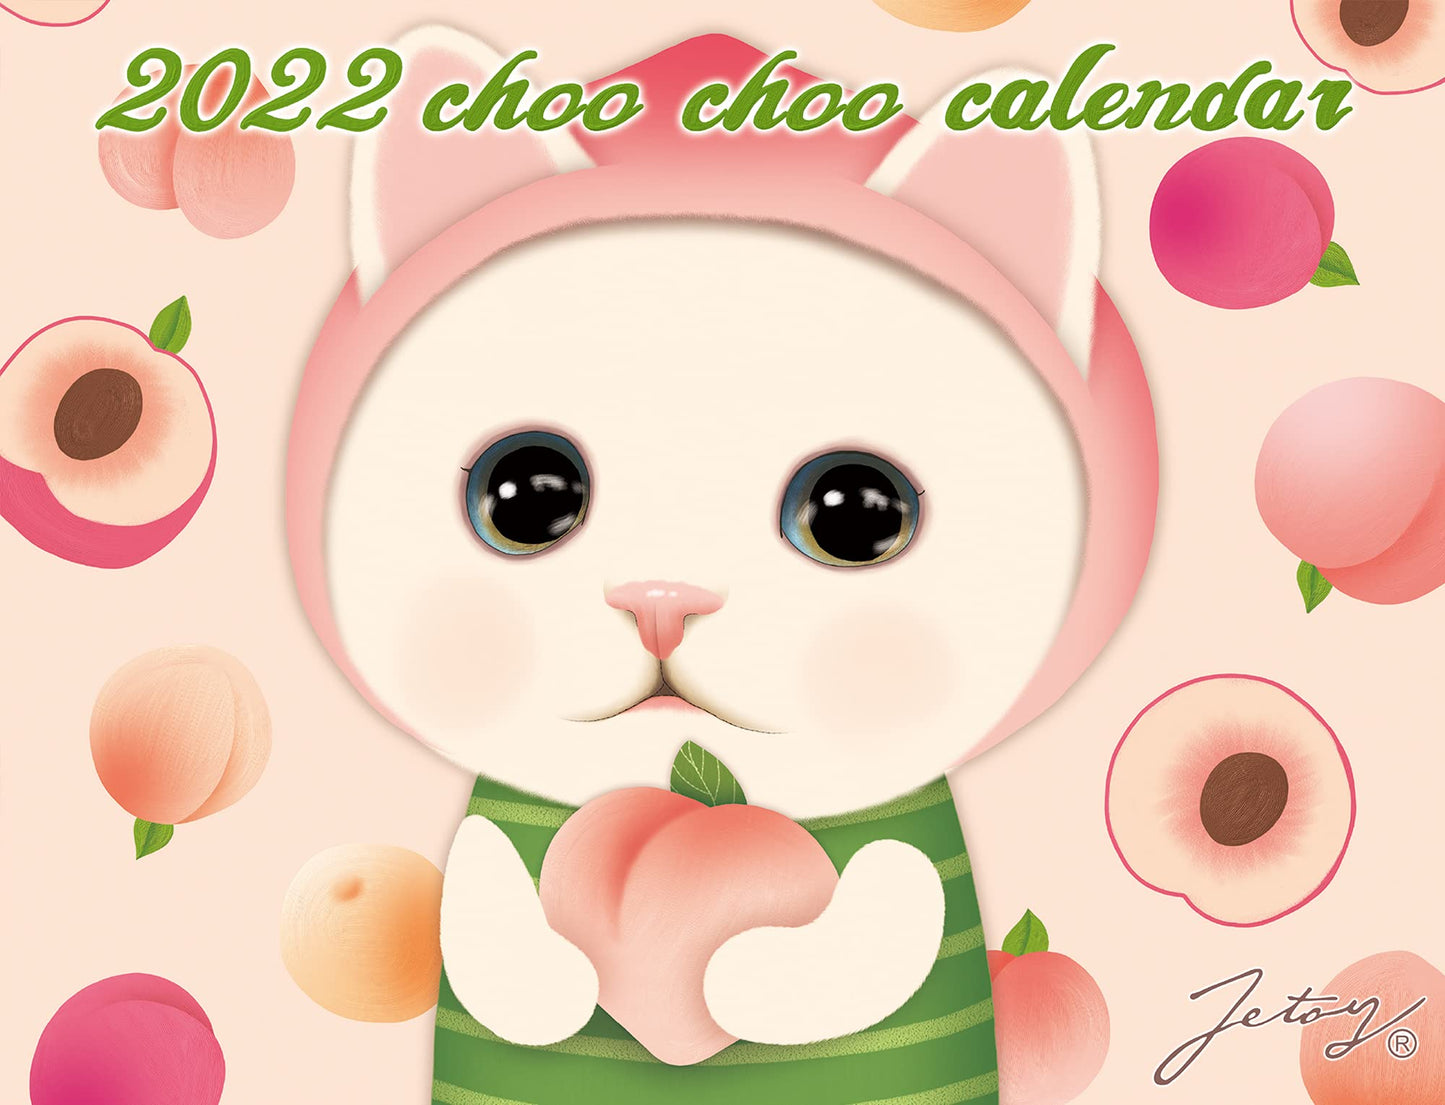 2022 choo choo Calendar